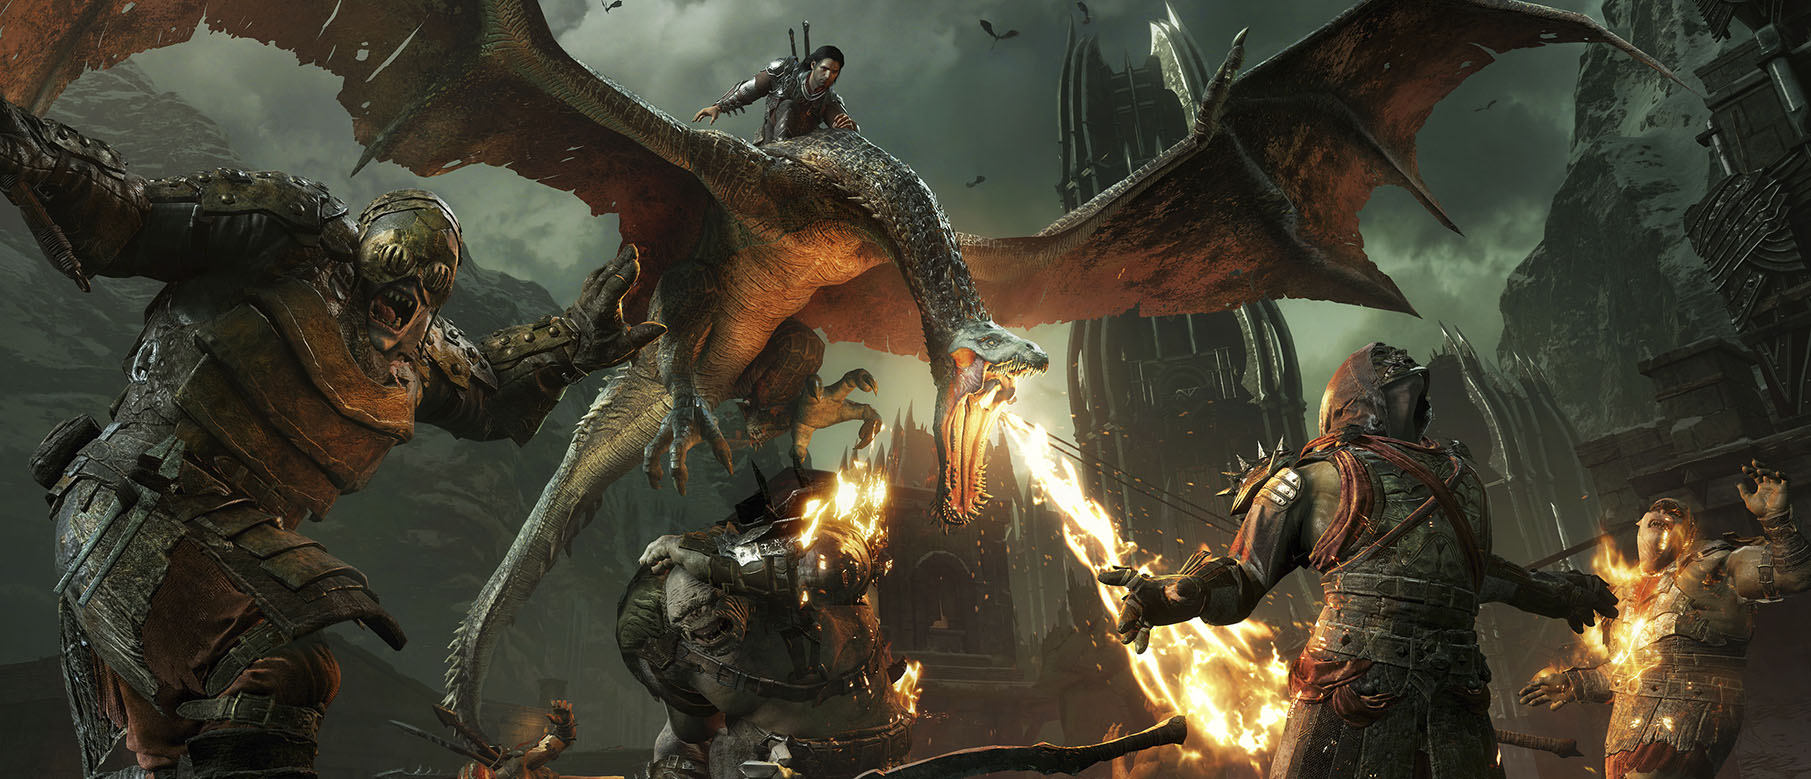 Изображение к Middle-earth: Shadow of War будет значительно больше и разнообразней предыдущей игры